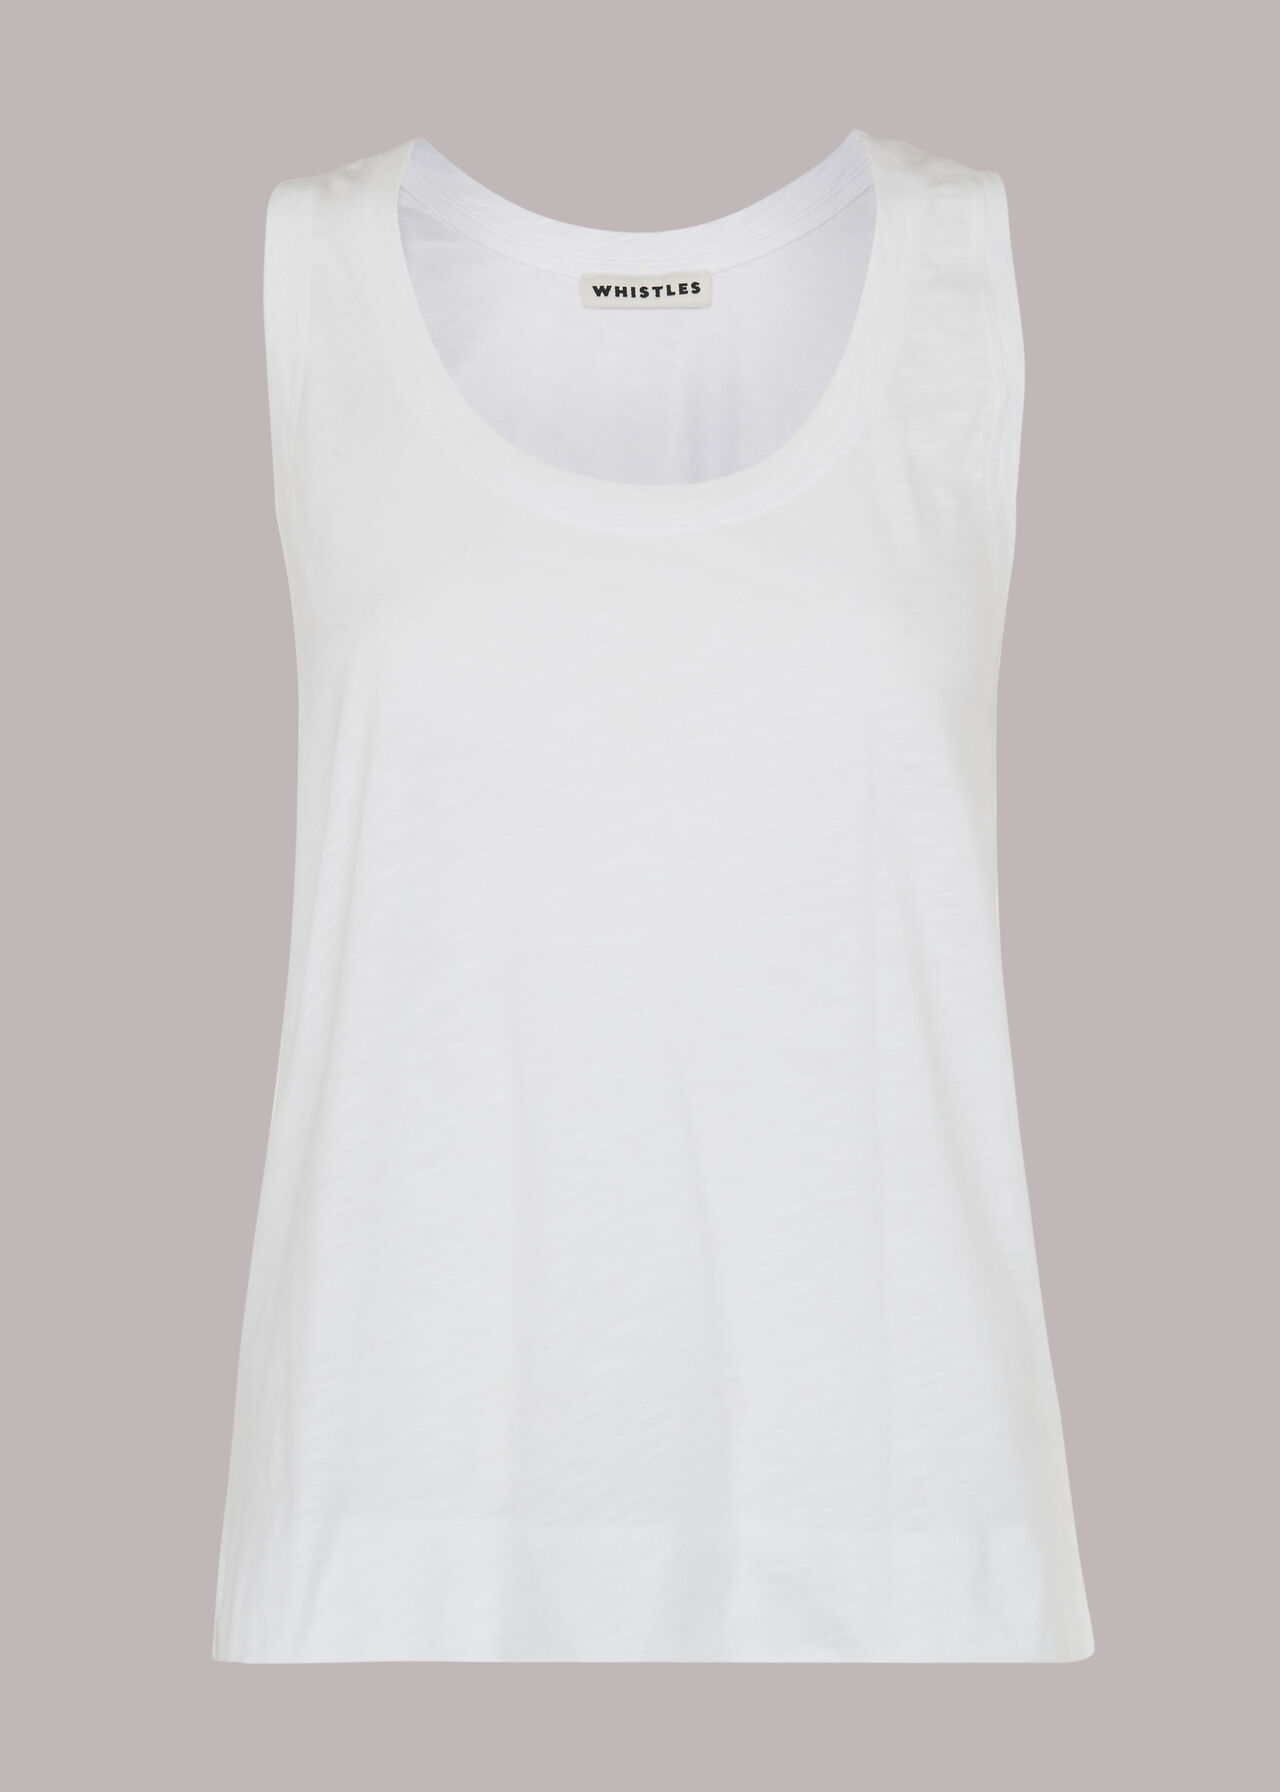 White Easy Basic Vest Top | WHISTLES